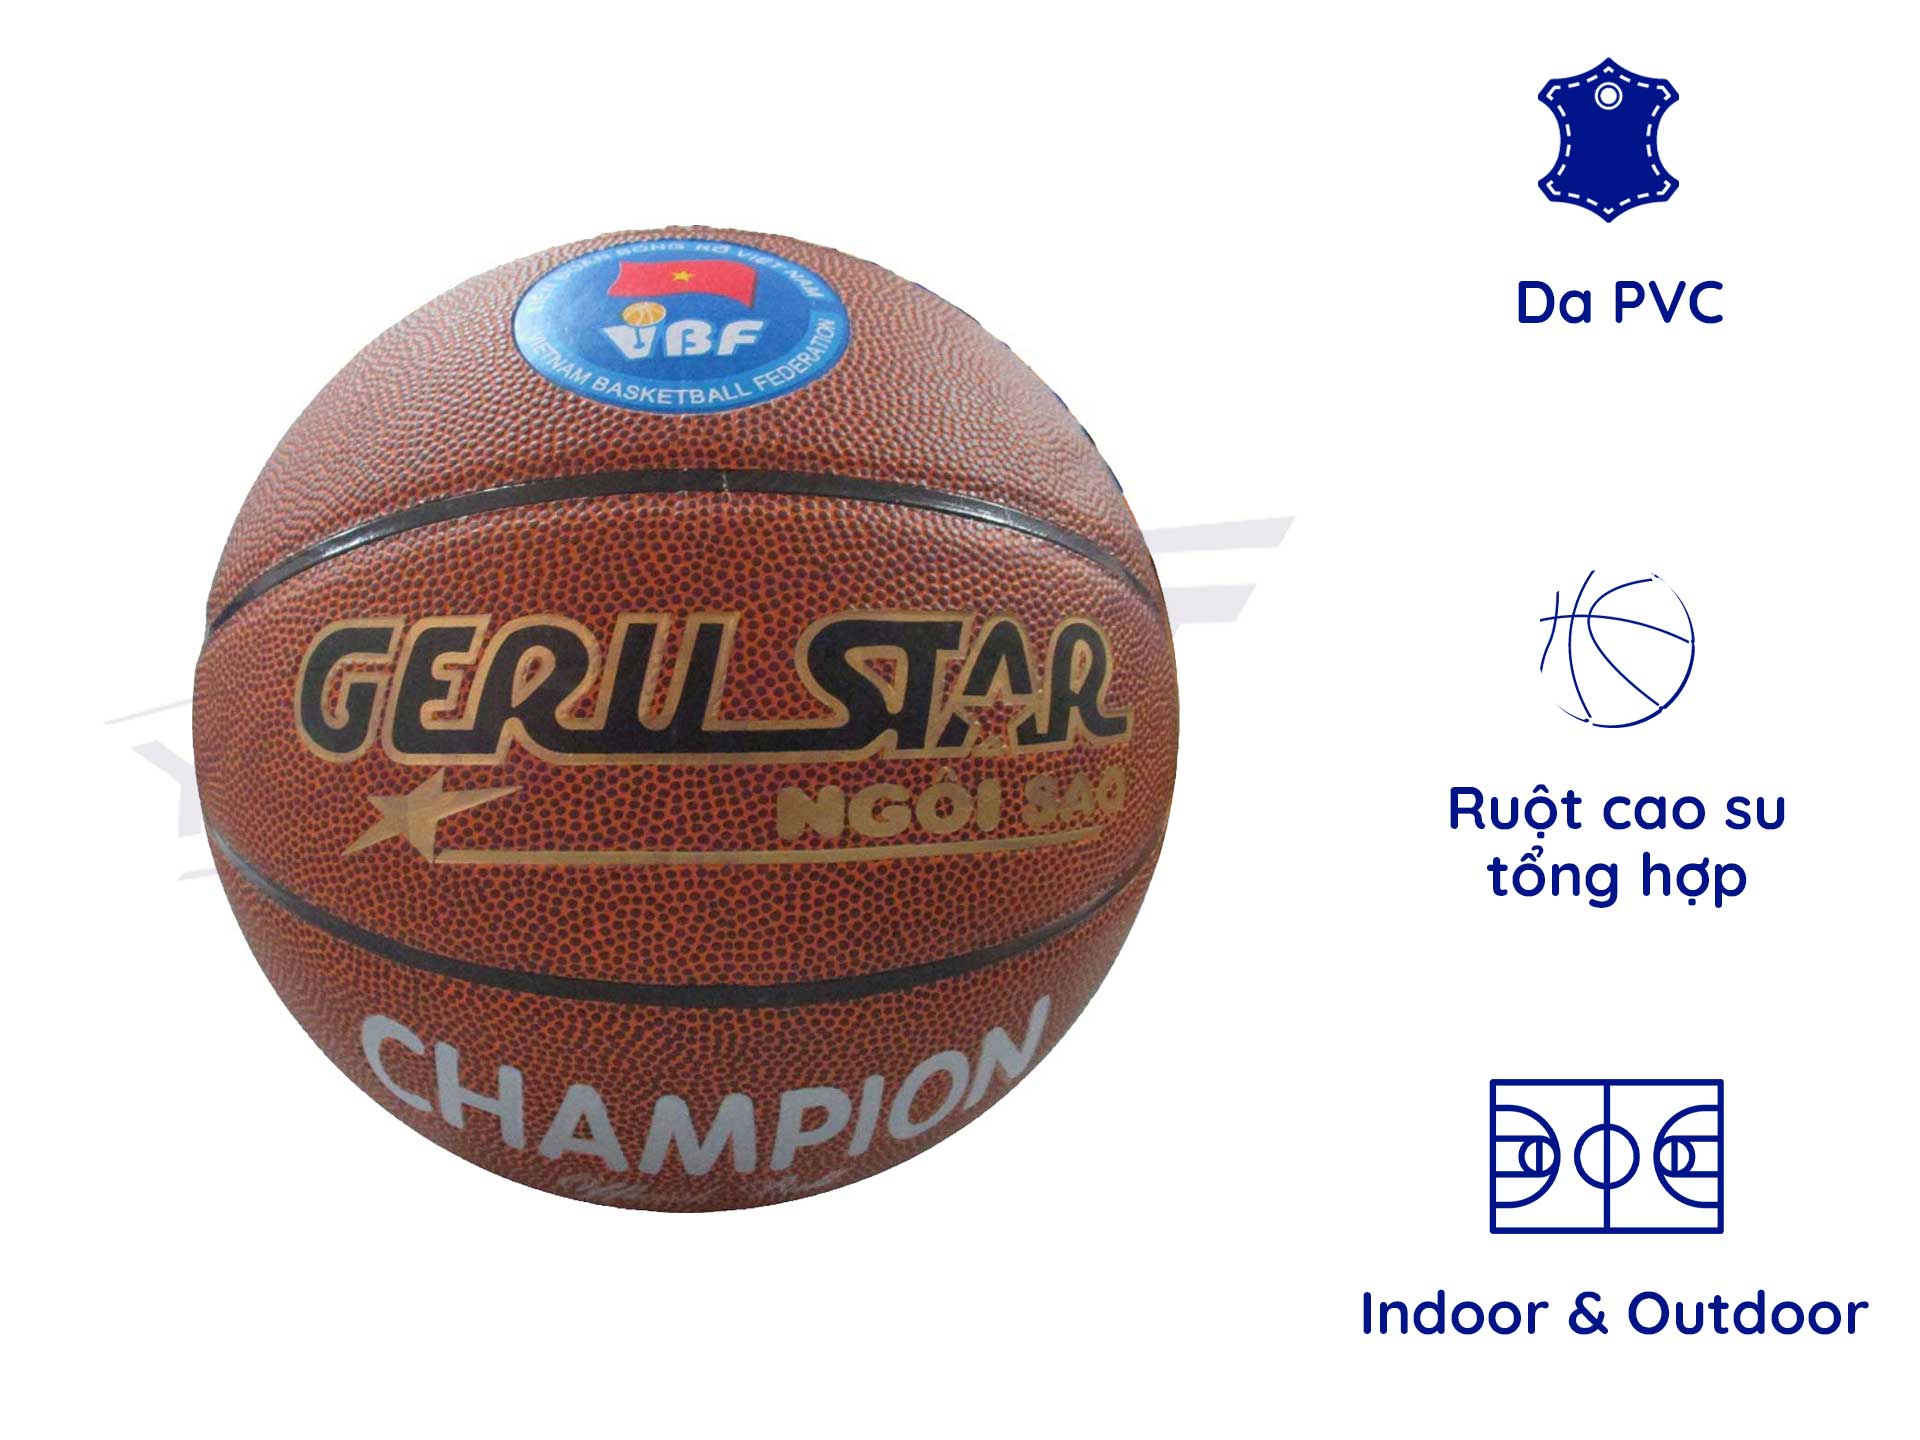 Bóng rổ Geru Champion B7 - Quả bóng rổ chính hãng (chống thấm nước  độ bám tốt)